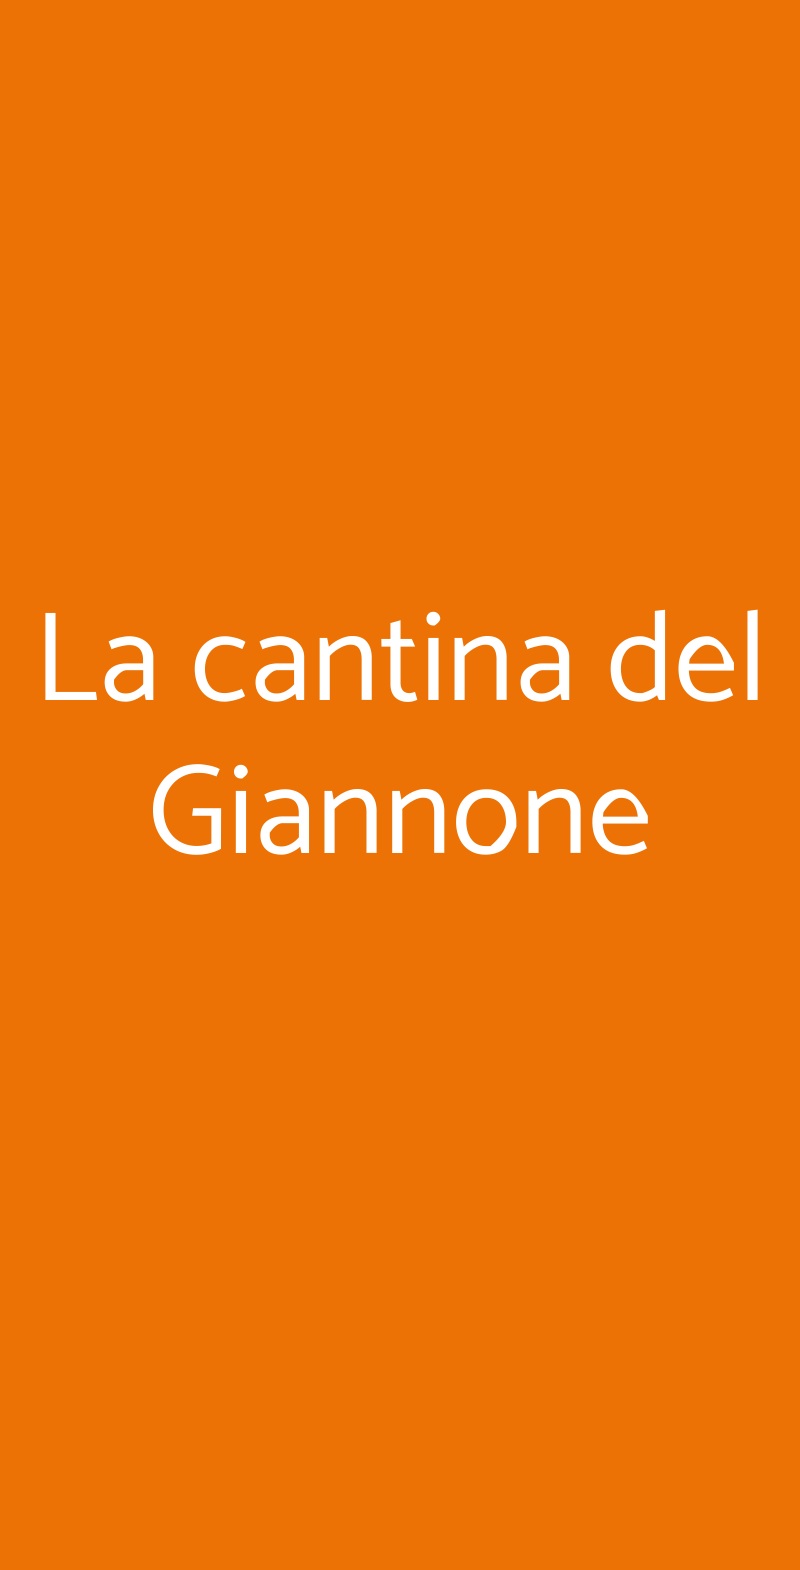 La cantina del Giannone Milano menù 1 pagina